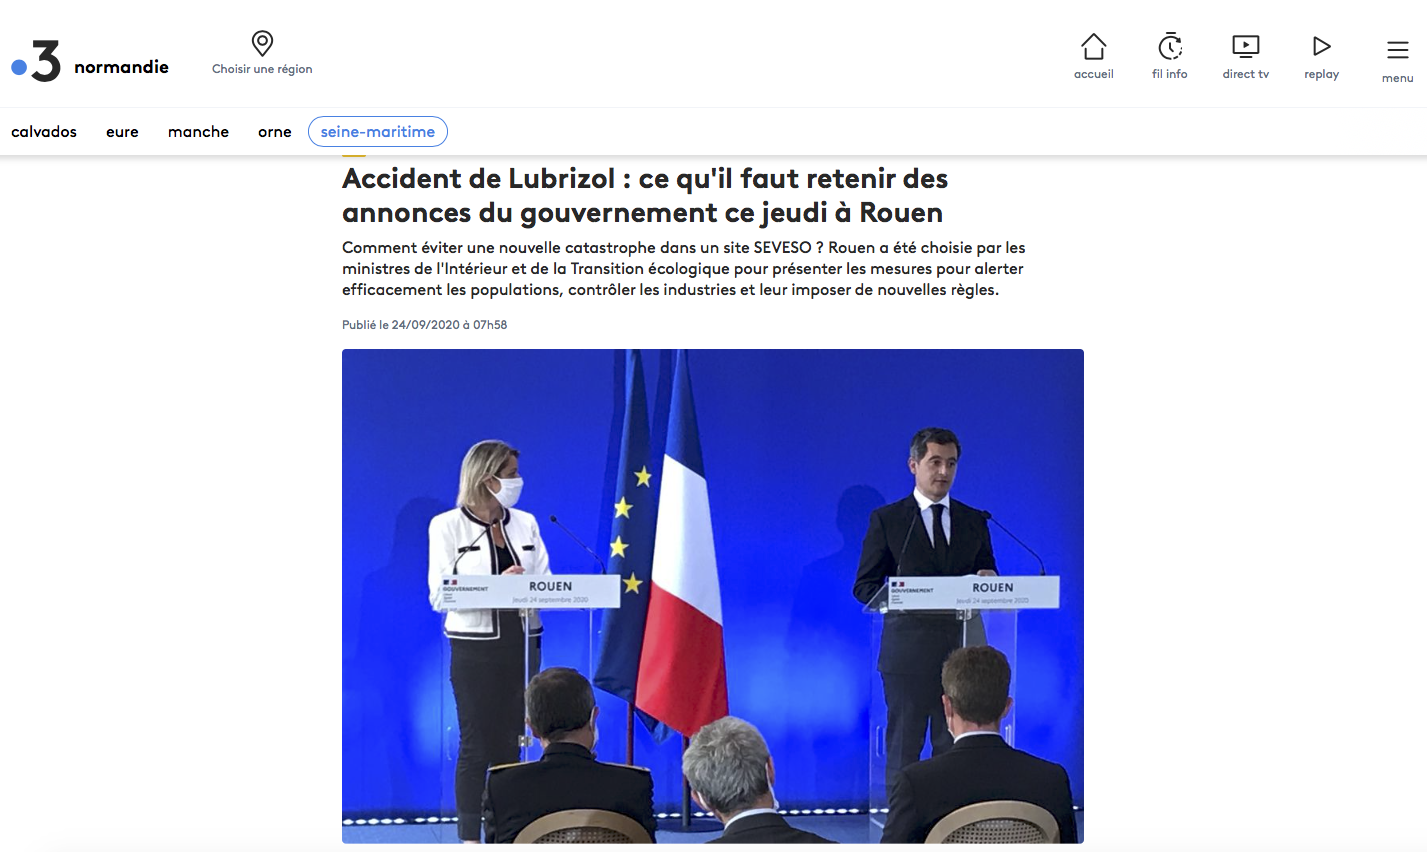 Accident de Lubrizol : ce qu'il faut retenir des annonces du gouvernement ce jeudi à Rouen {HTML}